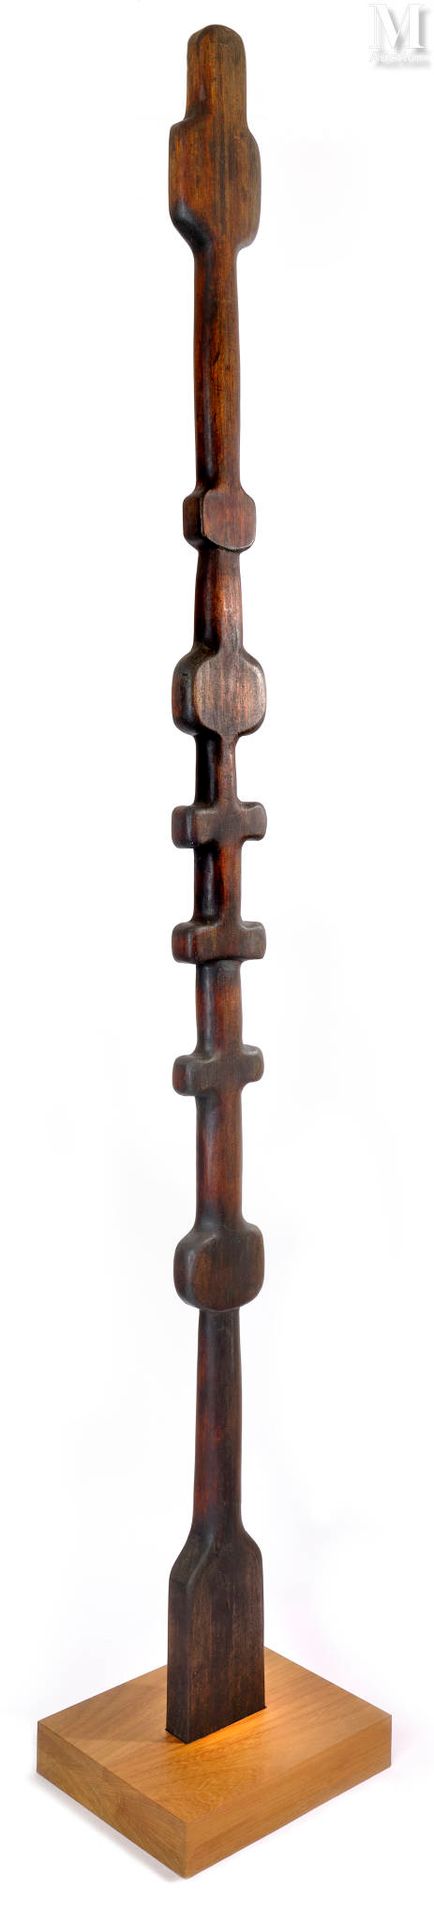 François STAHLY (1911-2006) Sin título

Madera tallada
Altura: 248 cm (incluida &hellip;